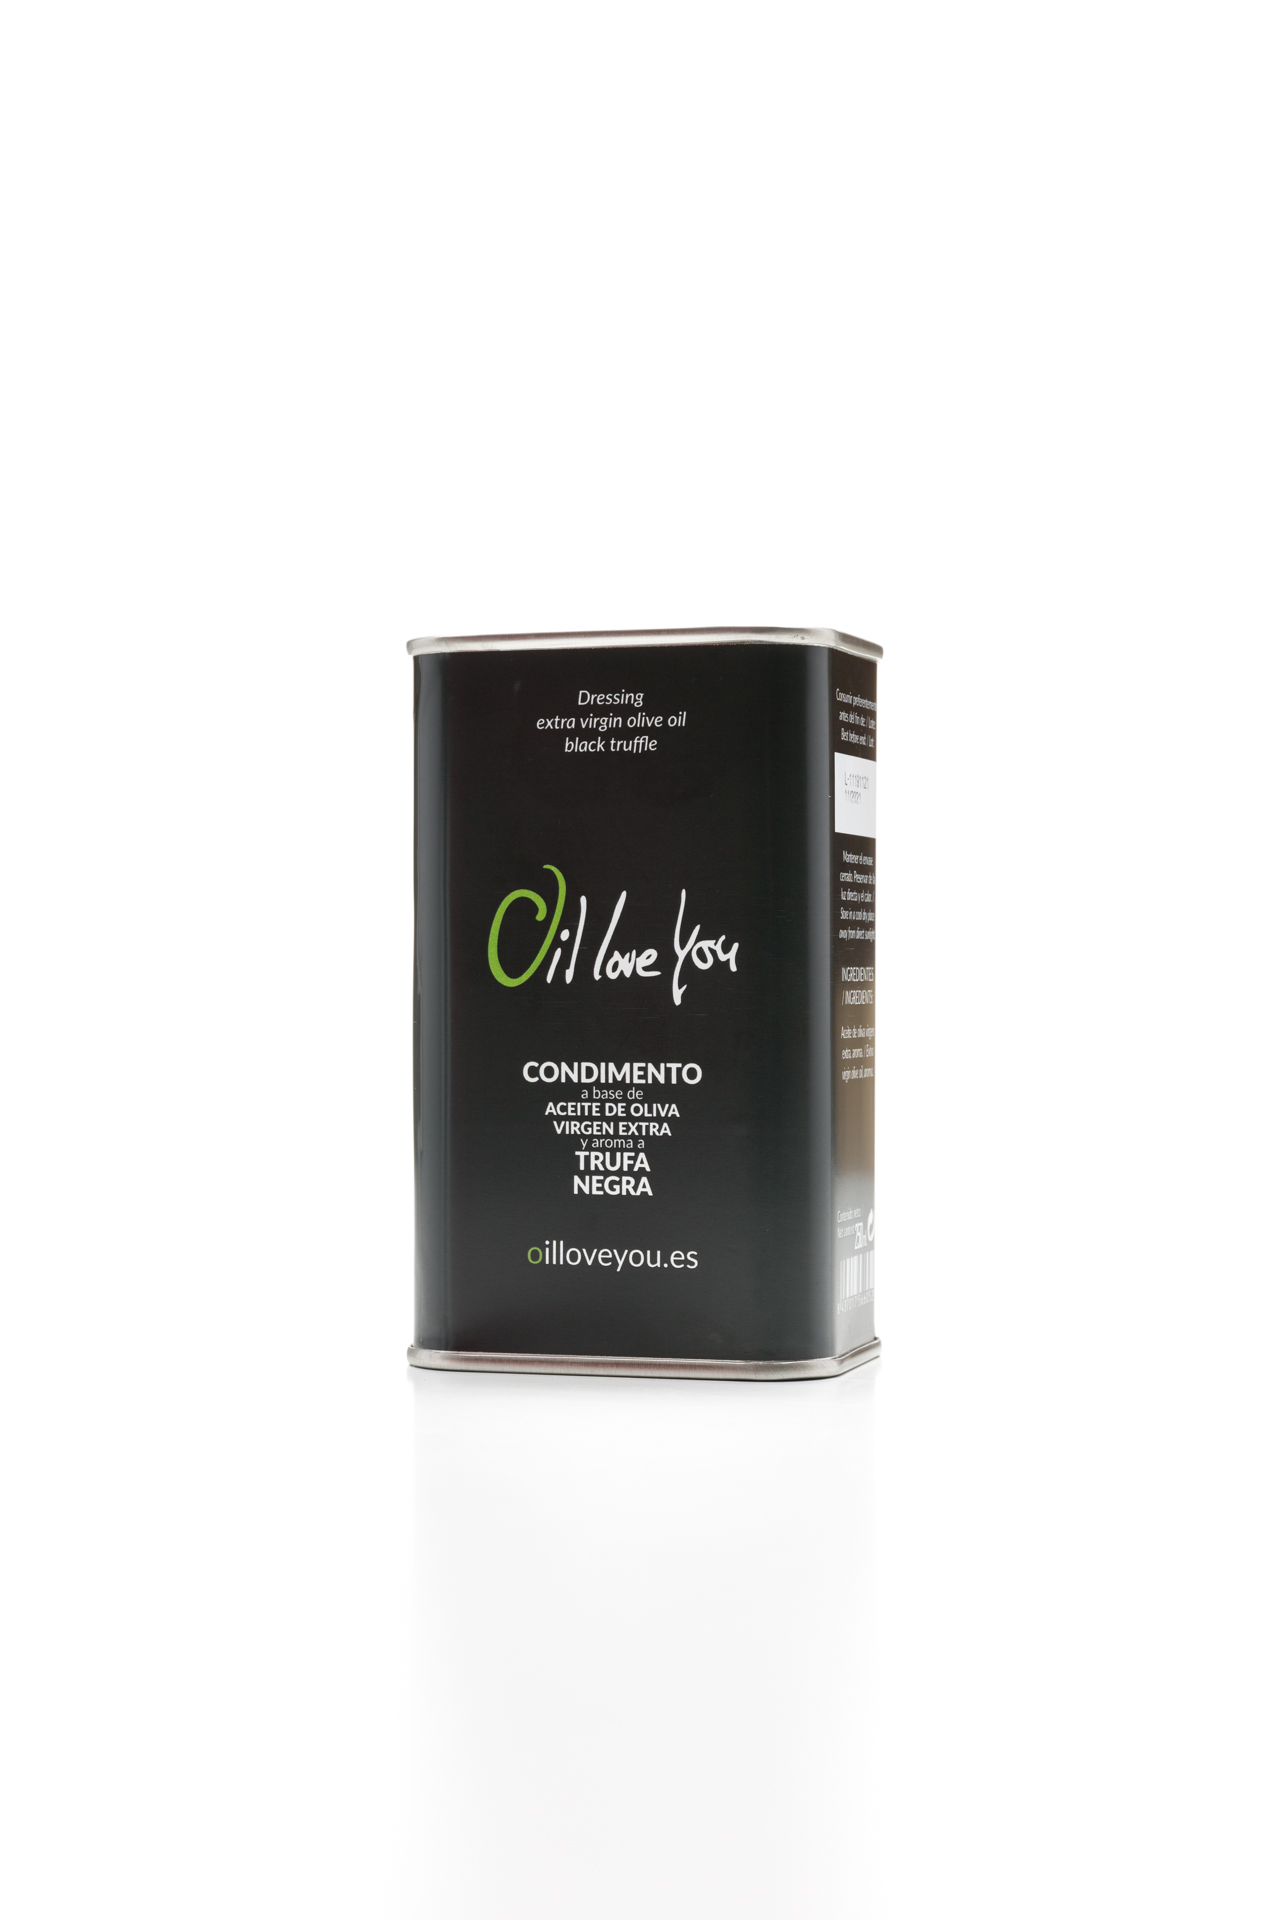 lata-de-aceite-de-oliva-virgen-extra-aromatizado-con-trufa-negra-250ml-oilloveyou (1)